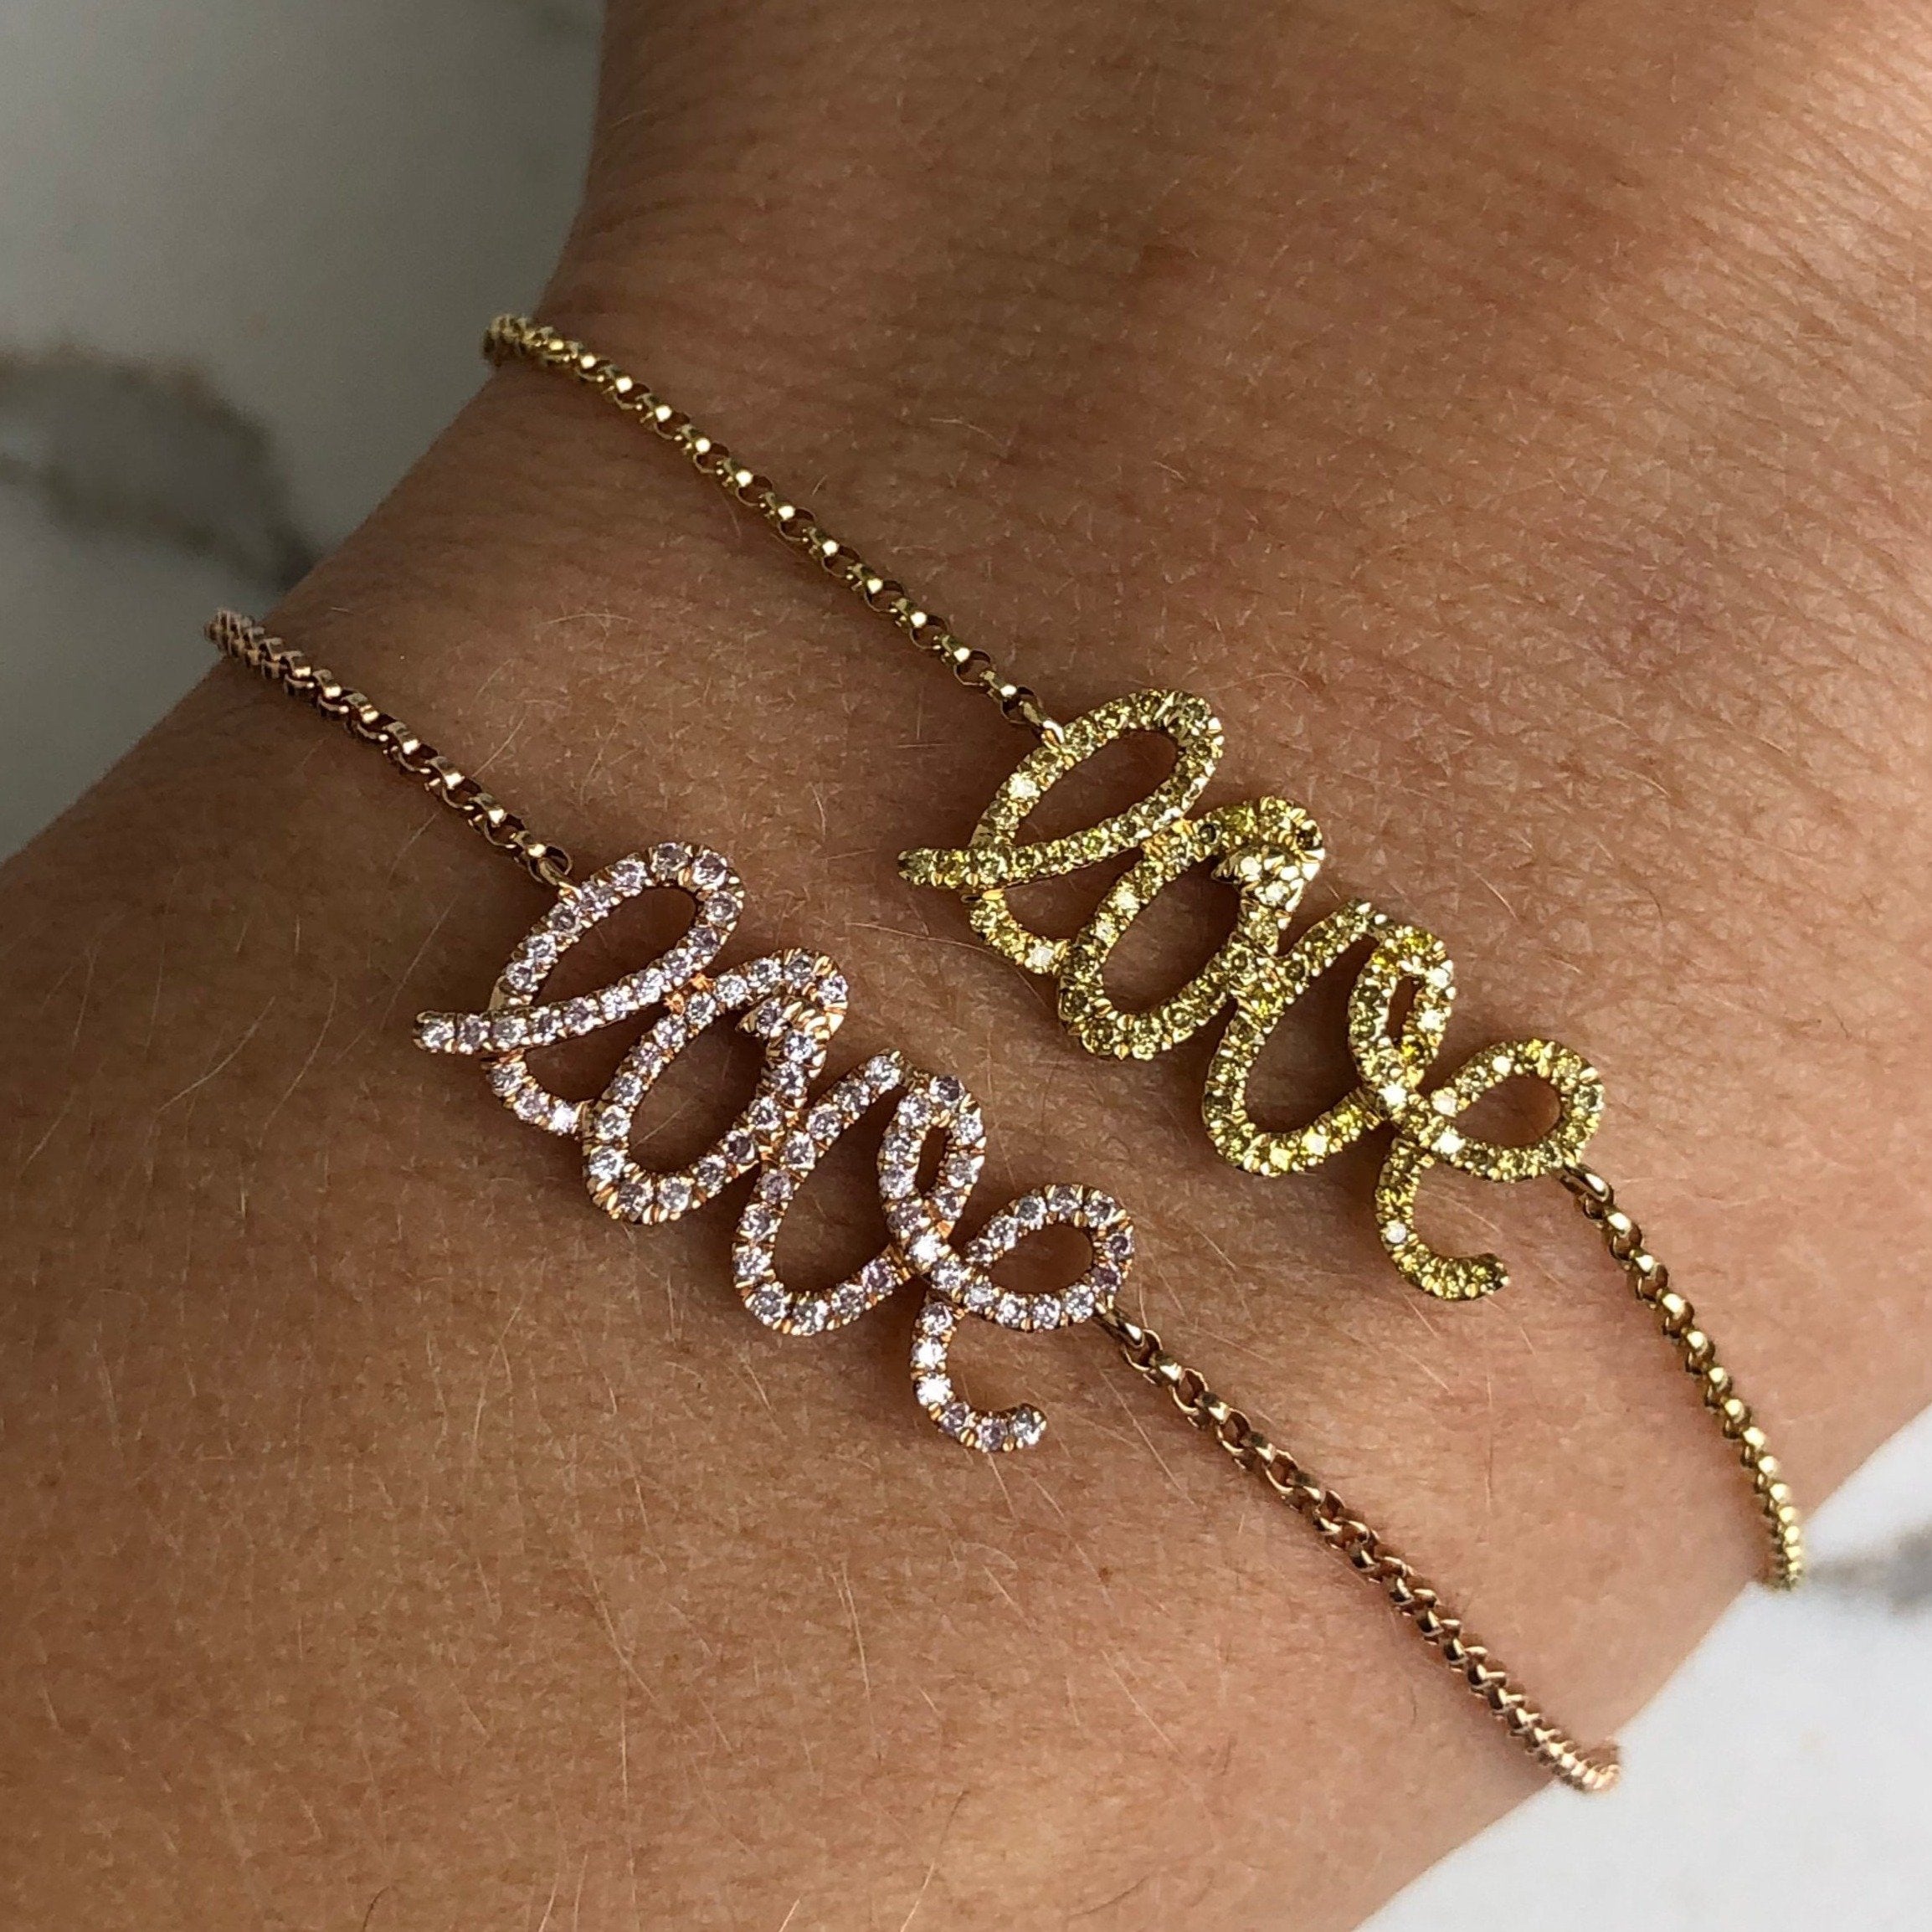 18K Gold Natural Fancy Pink Diamond Love Bracelet - Bracelets - Izakov Diamonds + Fine Jewelry